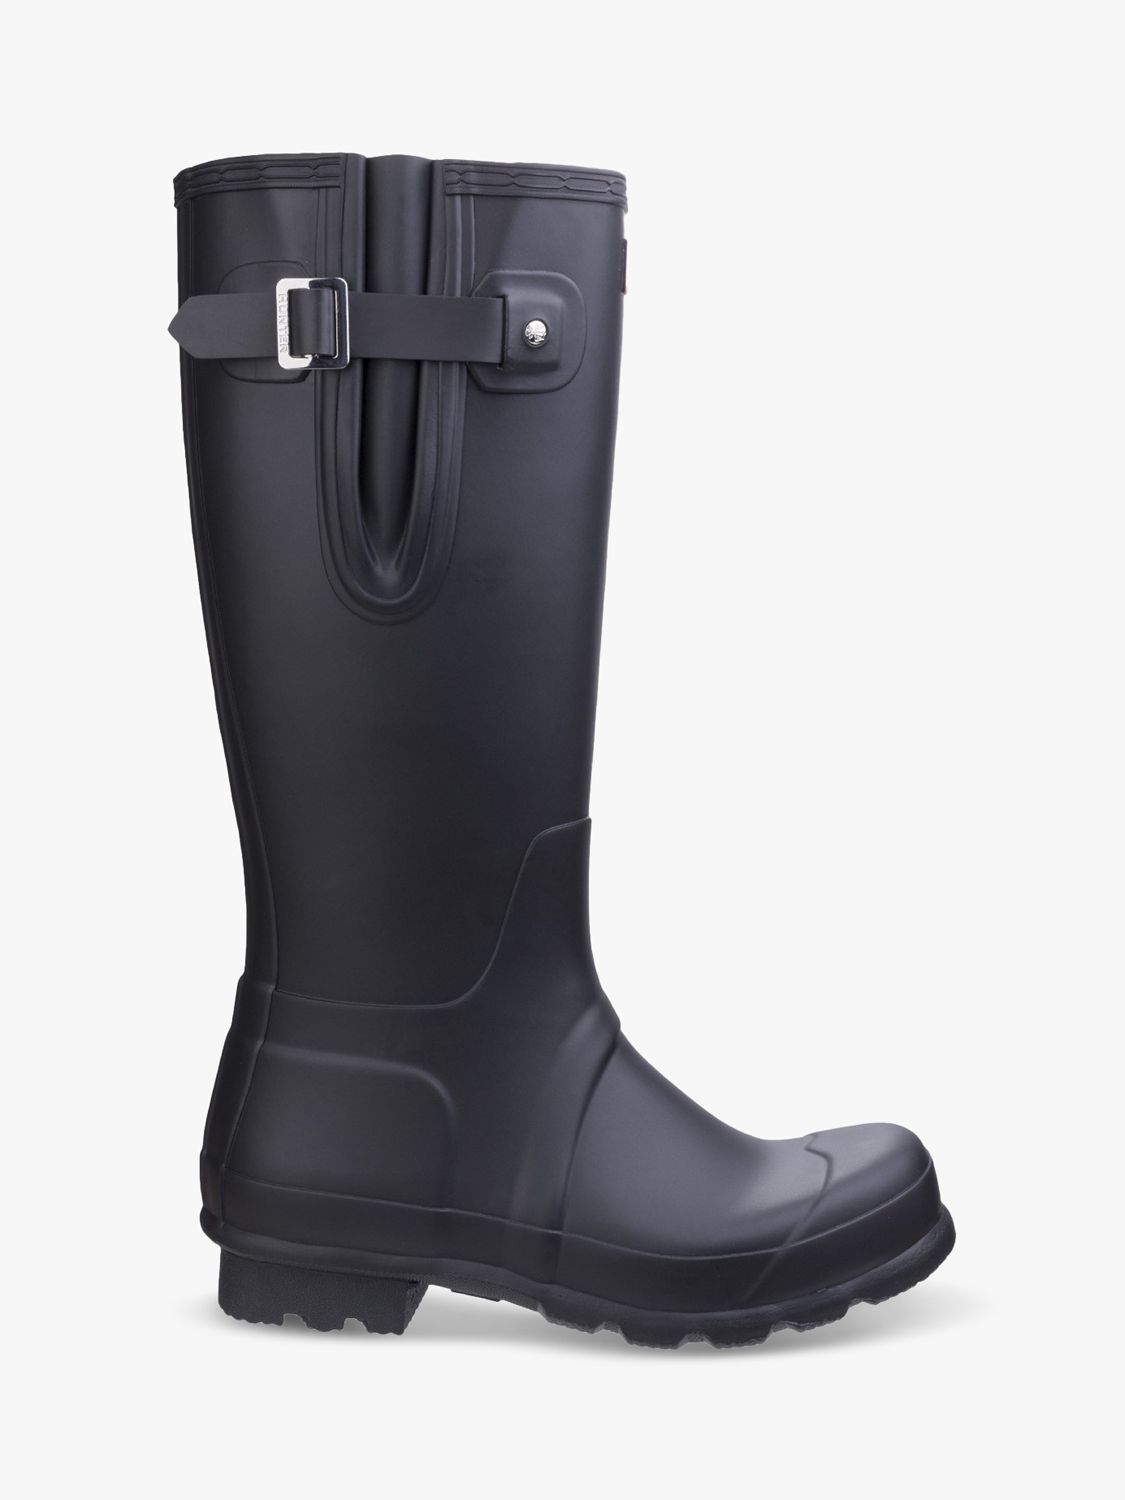 Hunter Original Tall Side Adjustable Wellington Boots, Black, 6